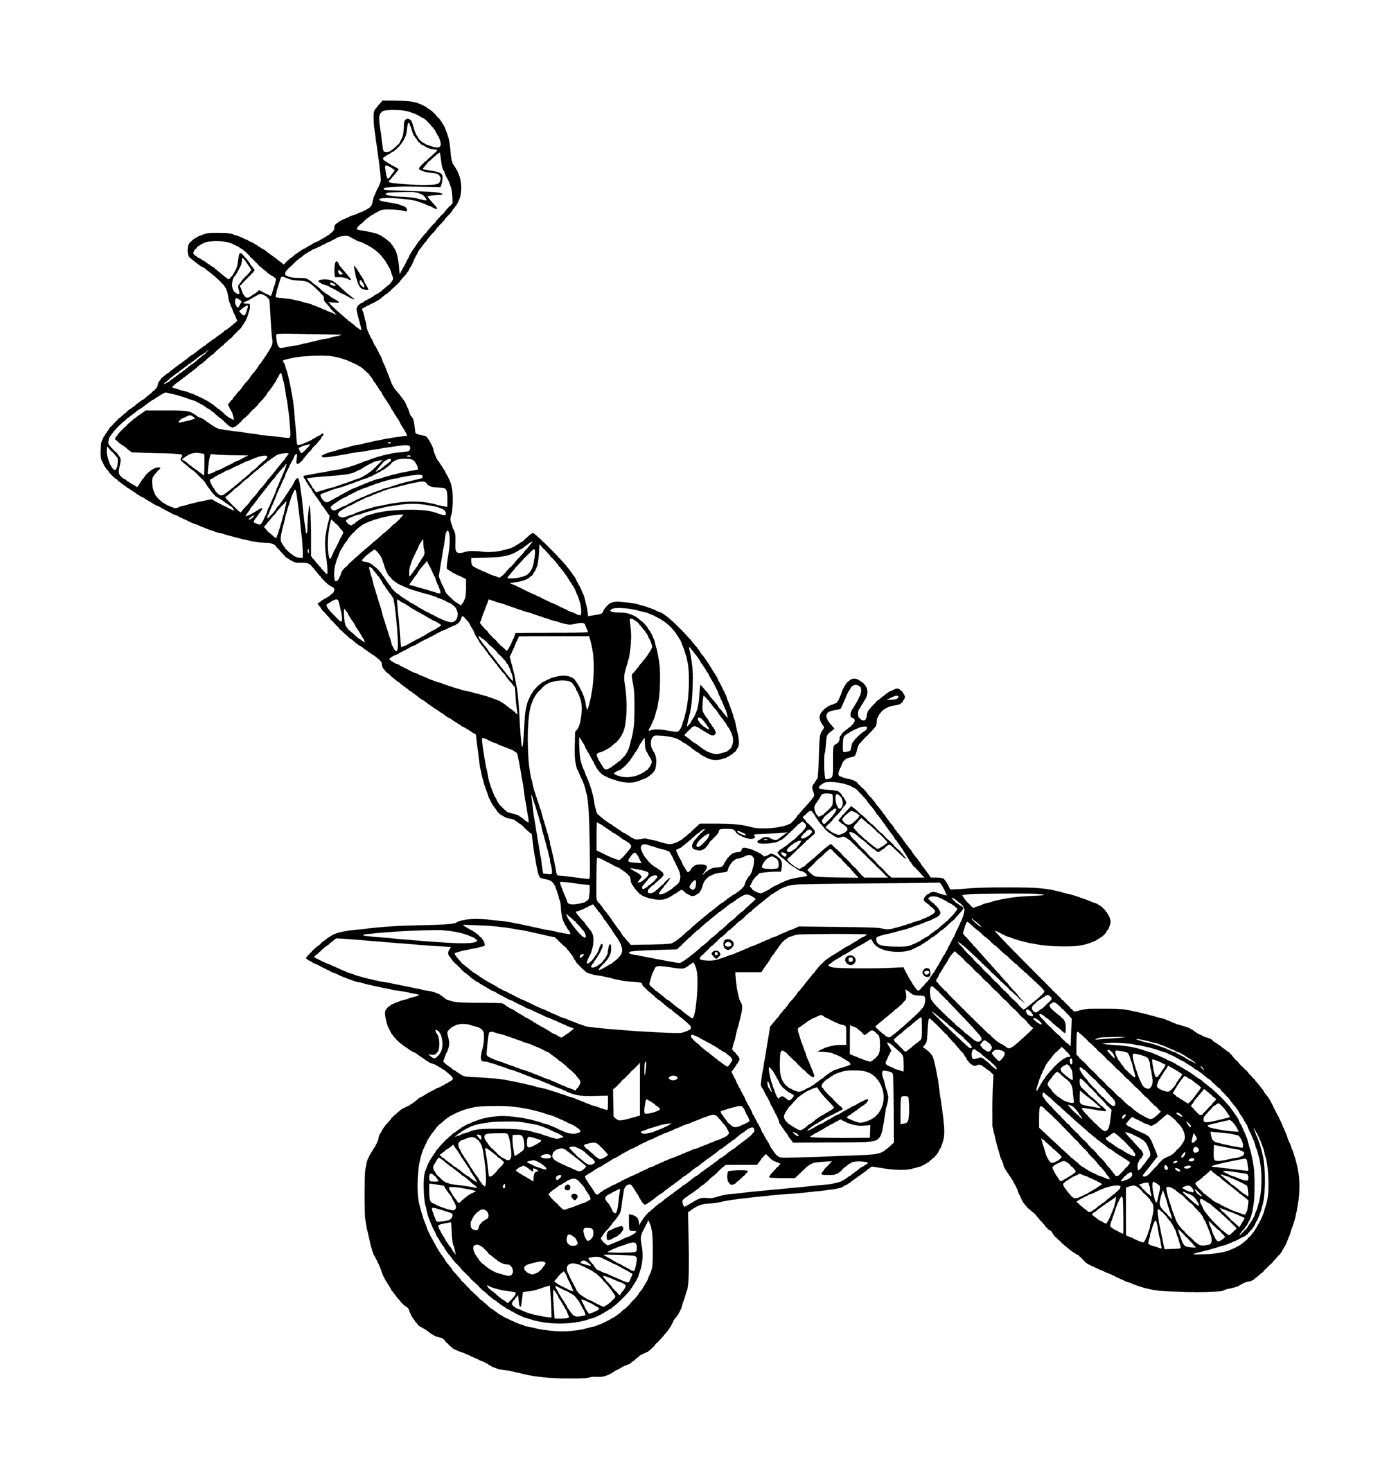  man doing backflip in motocross 